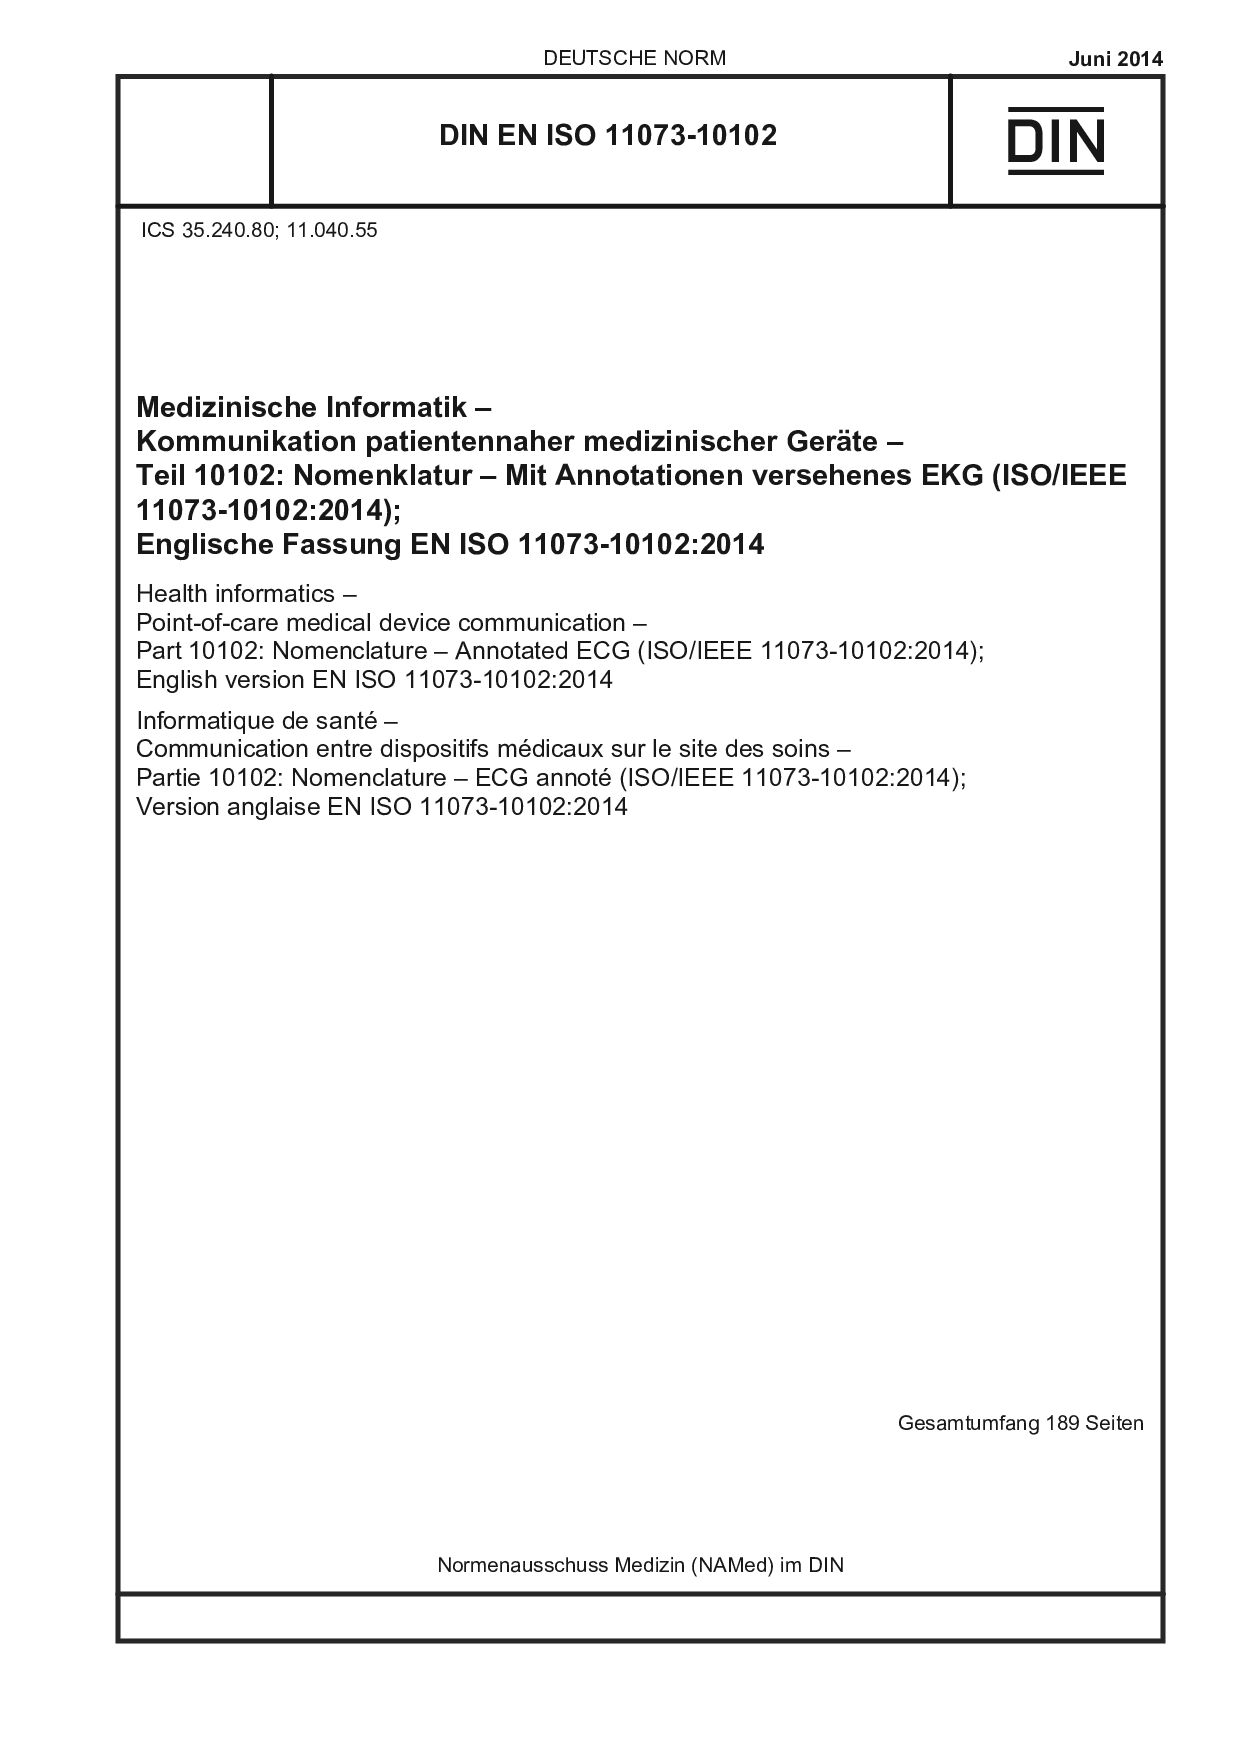 DIN EN ISO 11073-10102:2014